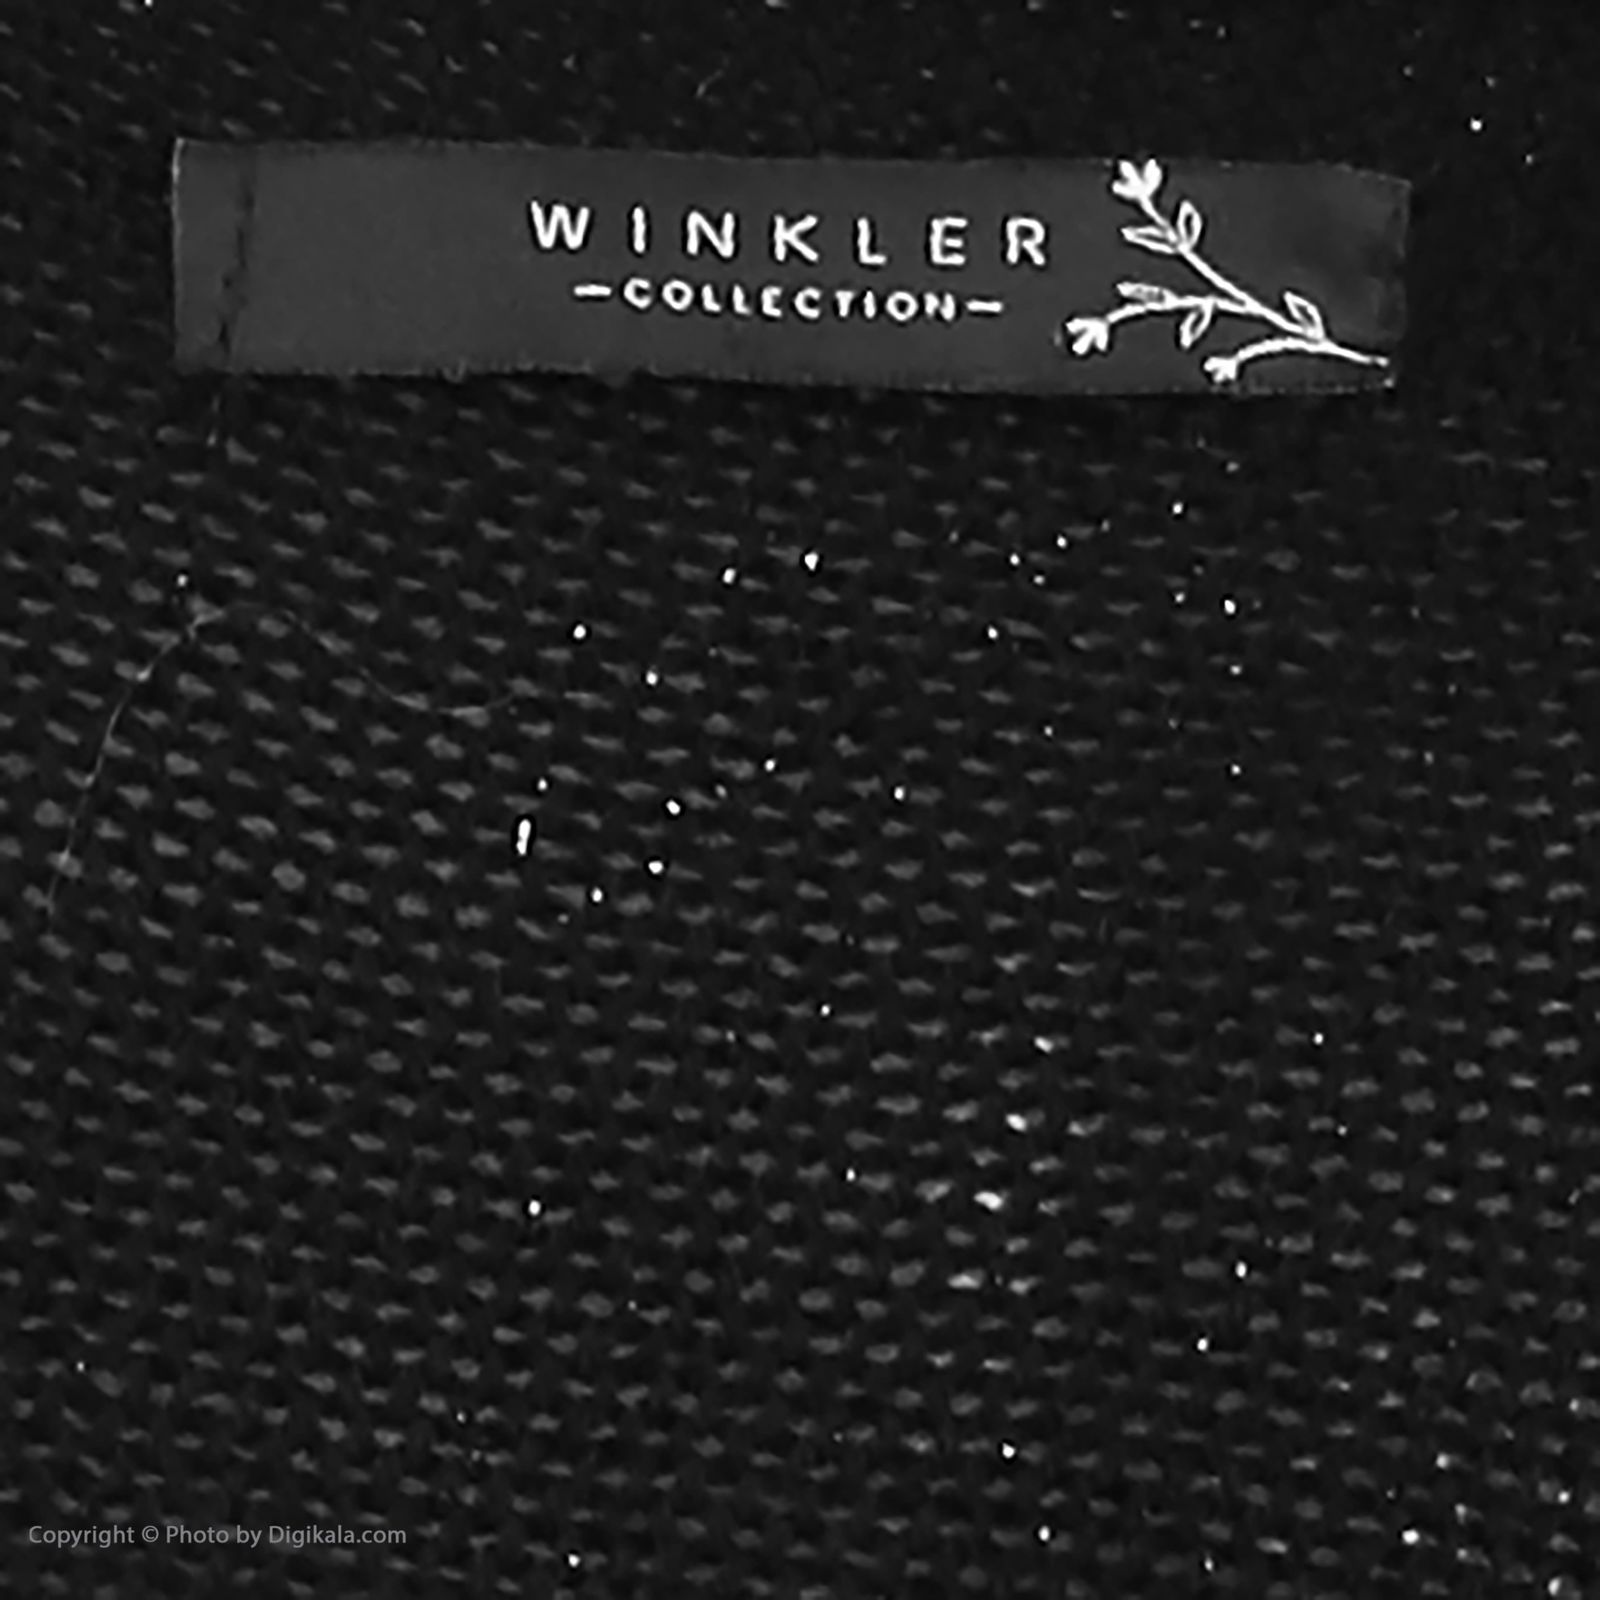 تونیک بافت زنانه وینکلر مدل 6260614019490 -  - 5